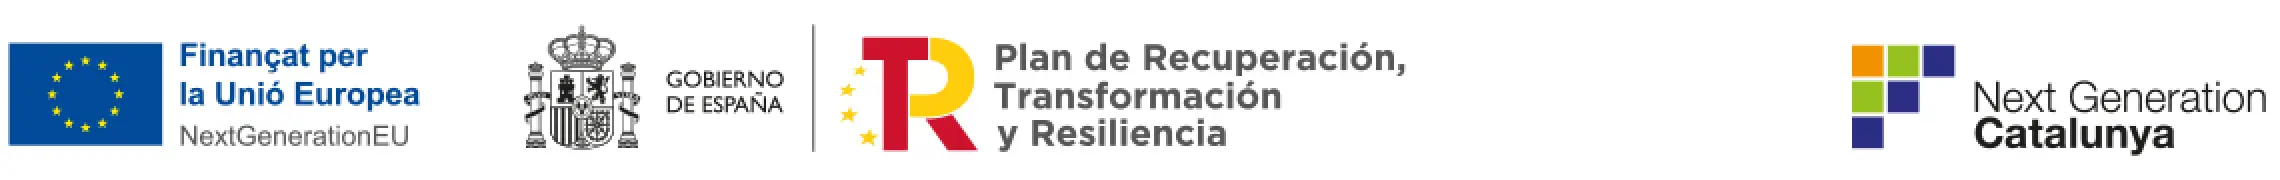 NextGenerationEU - Gobierno de España. Plan de Recuperación, Transformación y Resiliencia